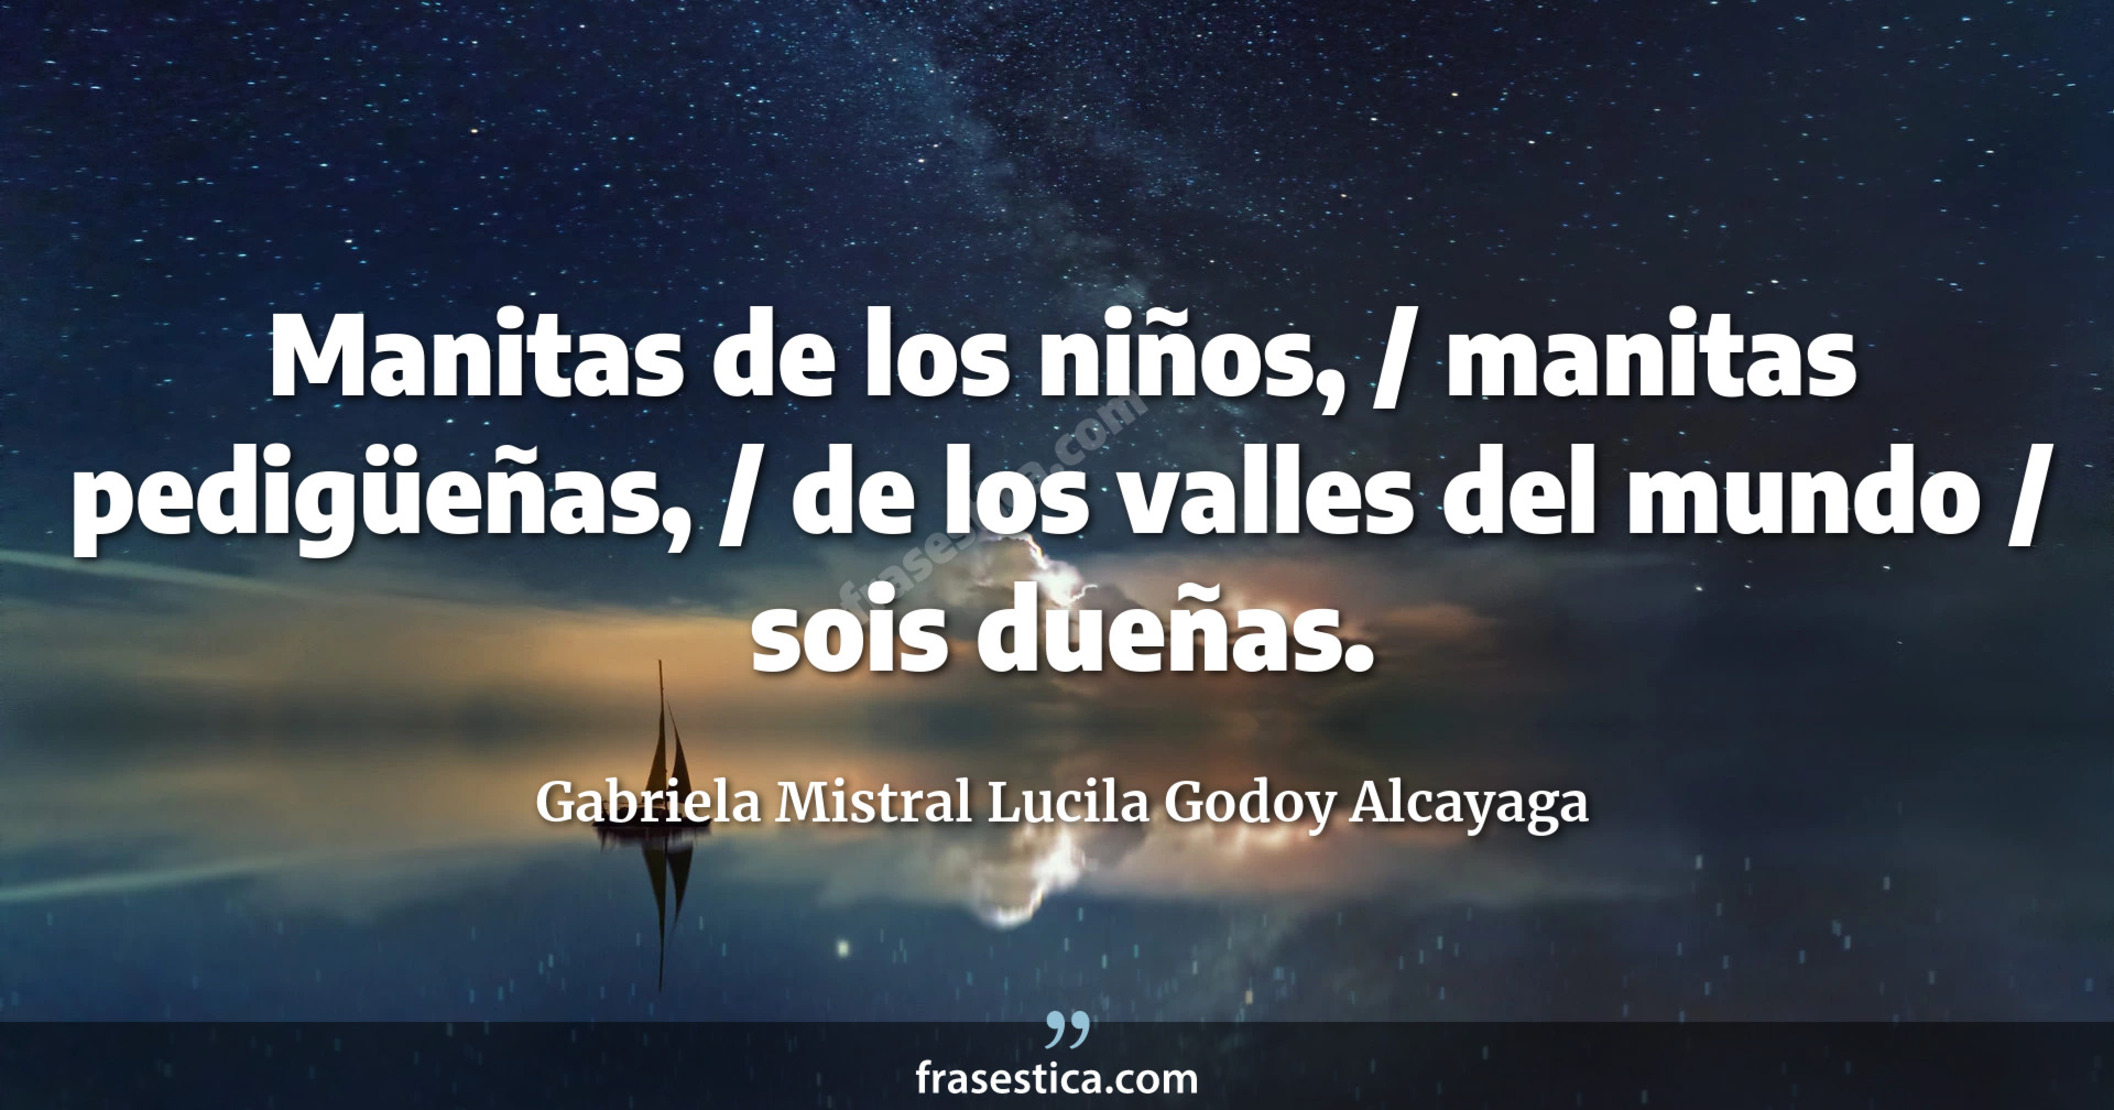 Manitas de los niños, / manitas pedigüeñas, / de los valles del mundo / sois dueñas. - Gabriela Mistral Lucila Godoy Alcayaga